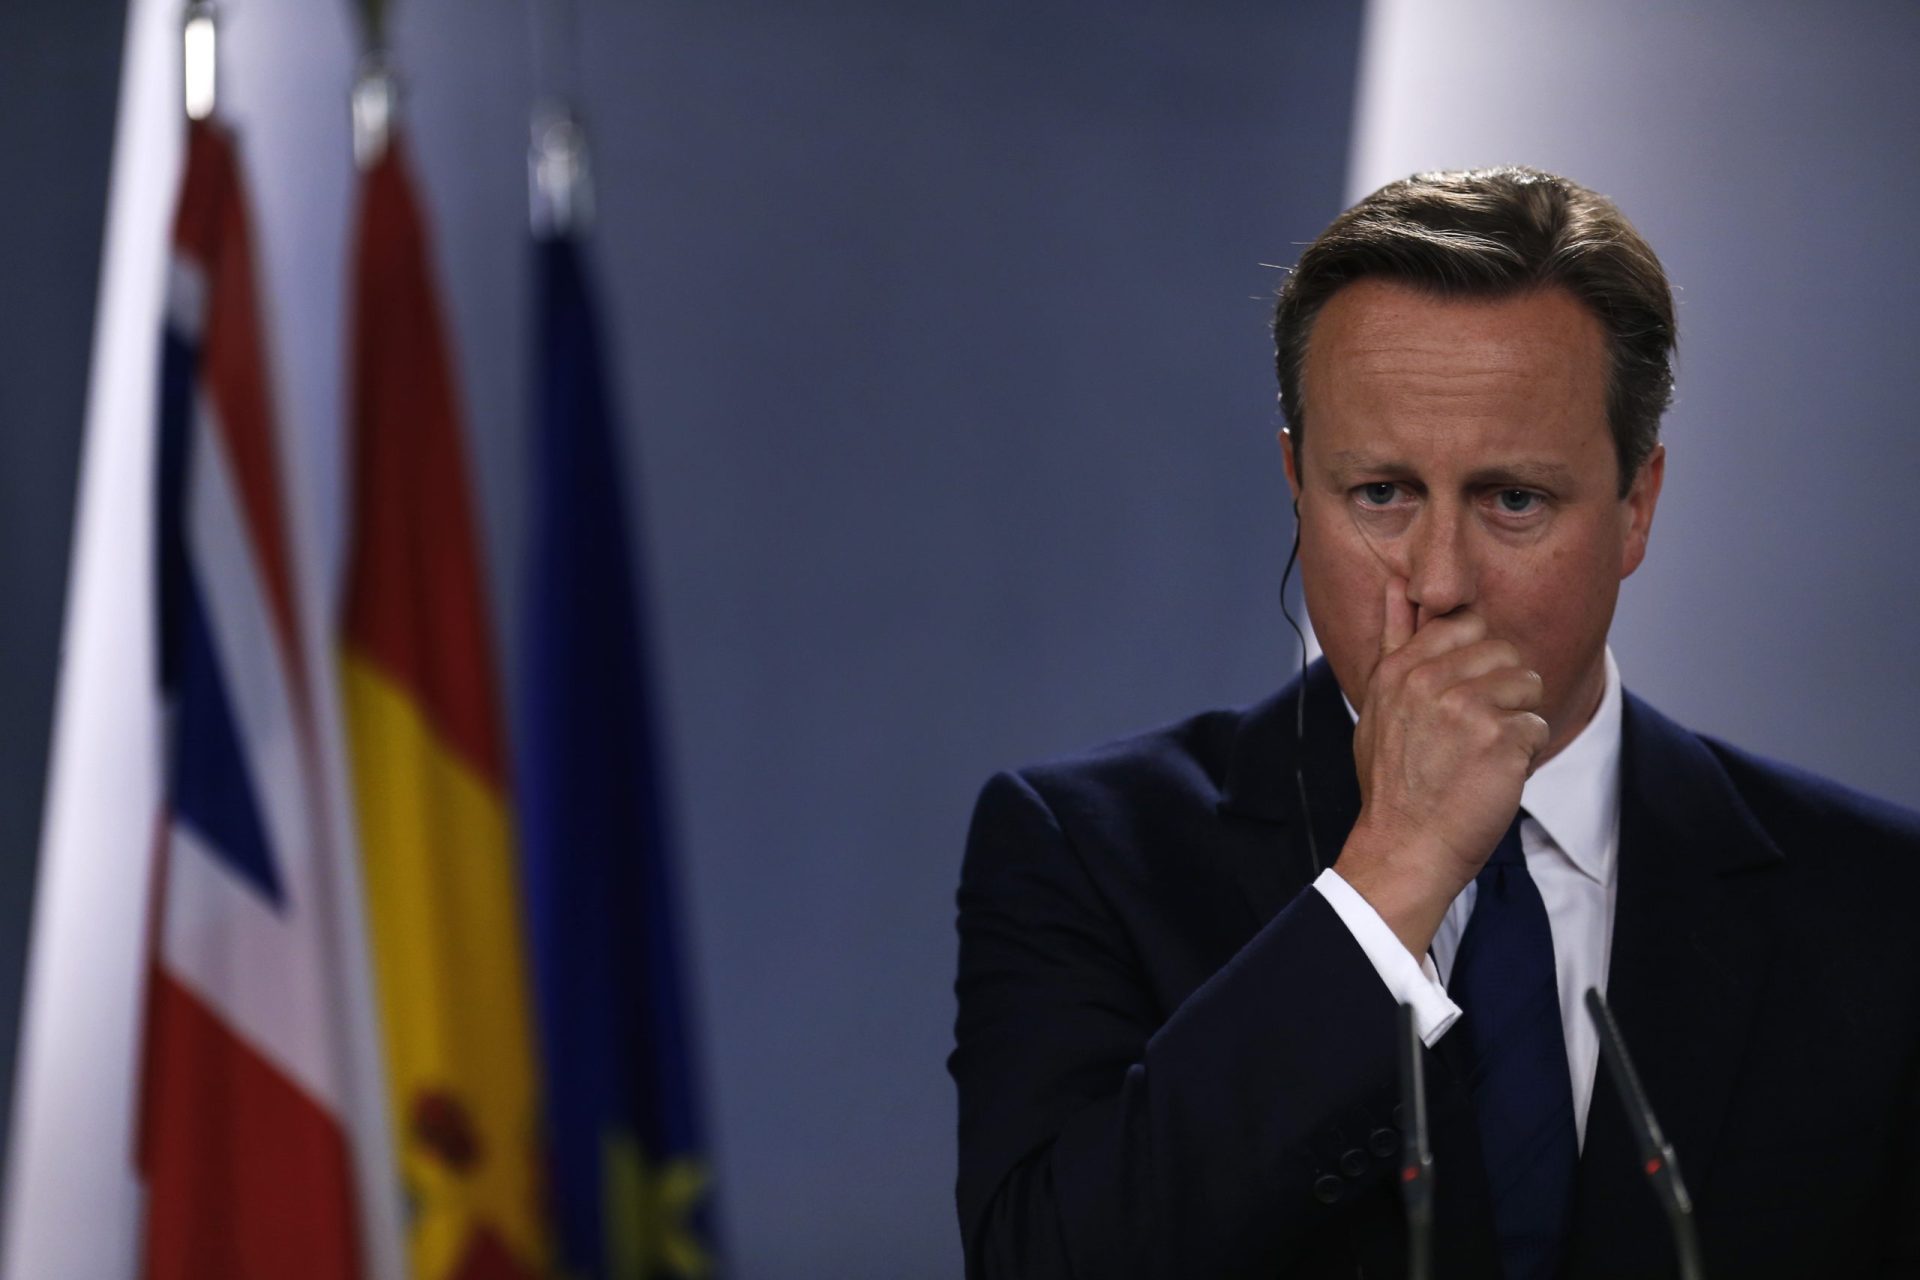 Cameron apanhado a dar ‘palmadinha’ no rabo de um ministro [vídeo]